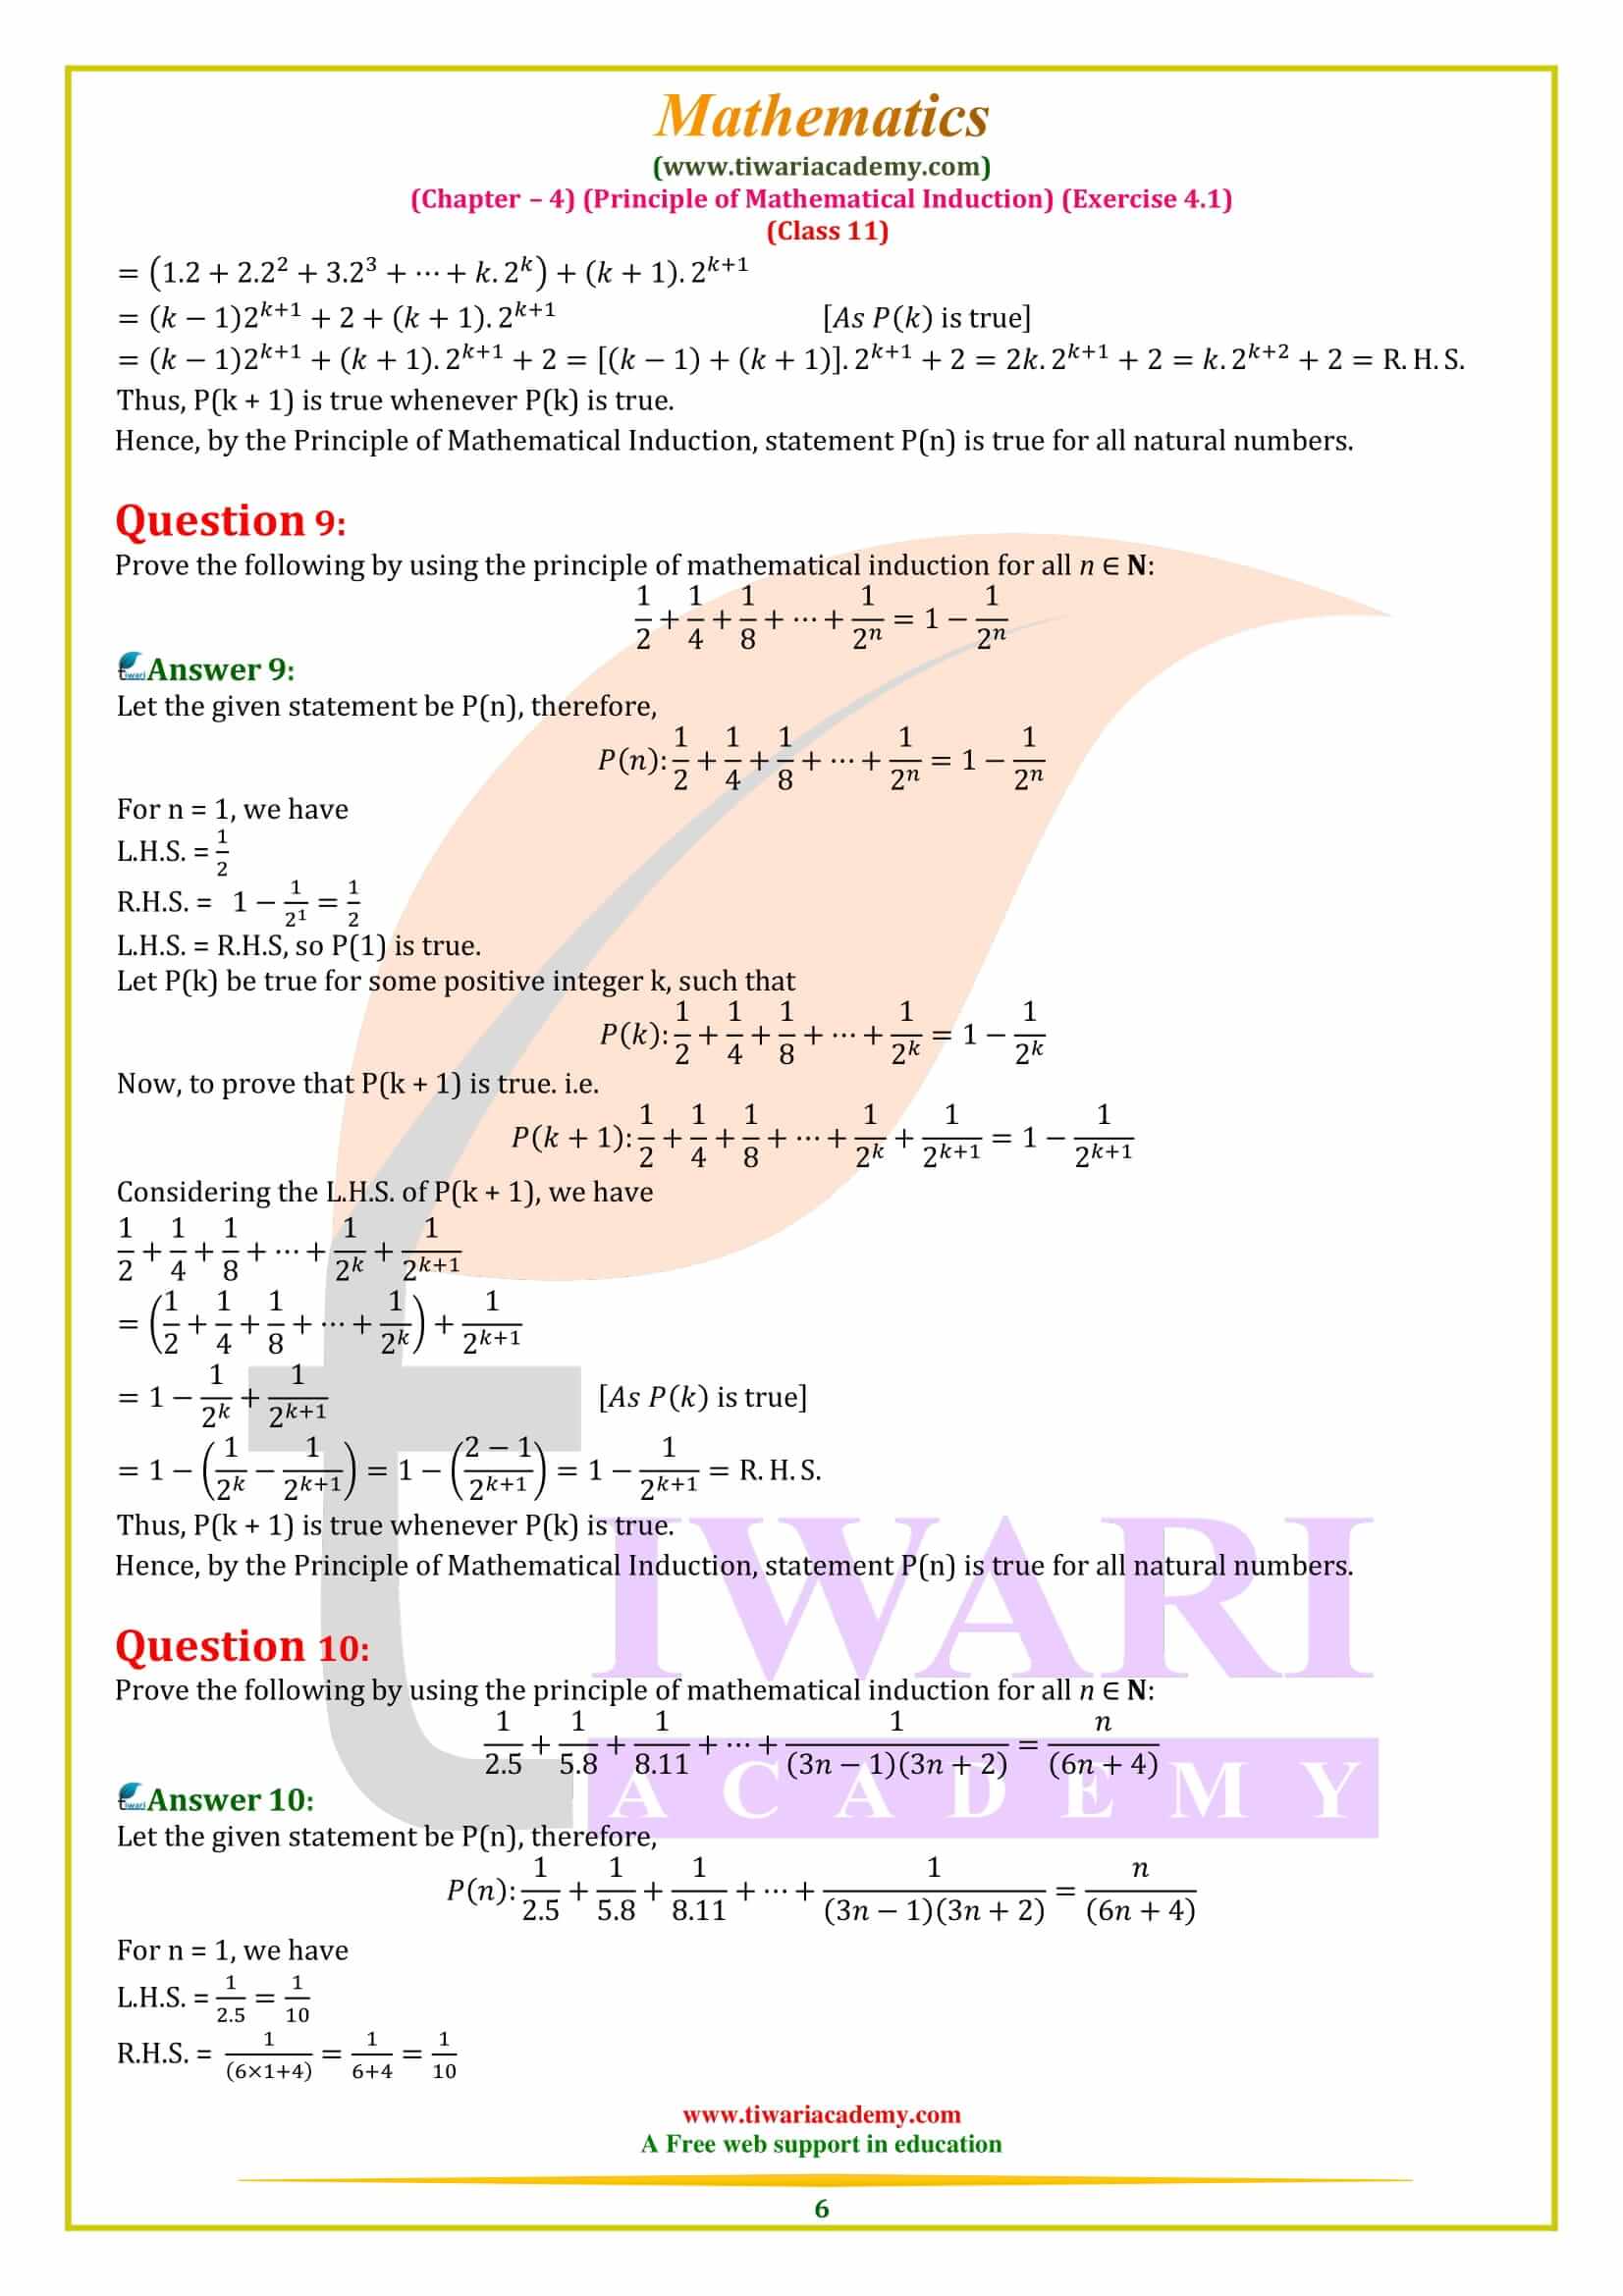 PMI 4.1 class 11 maths